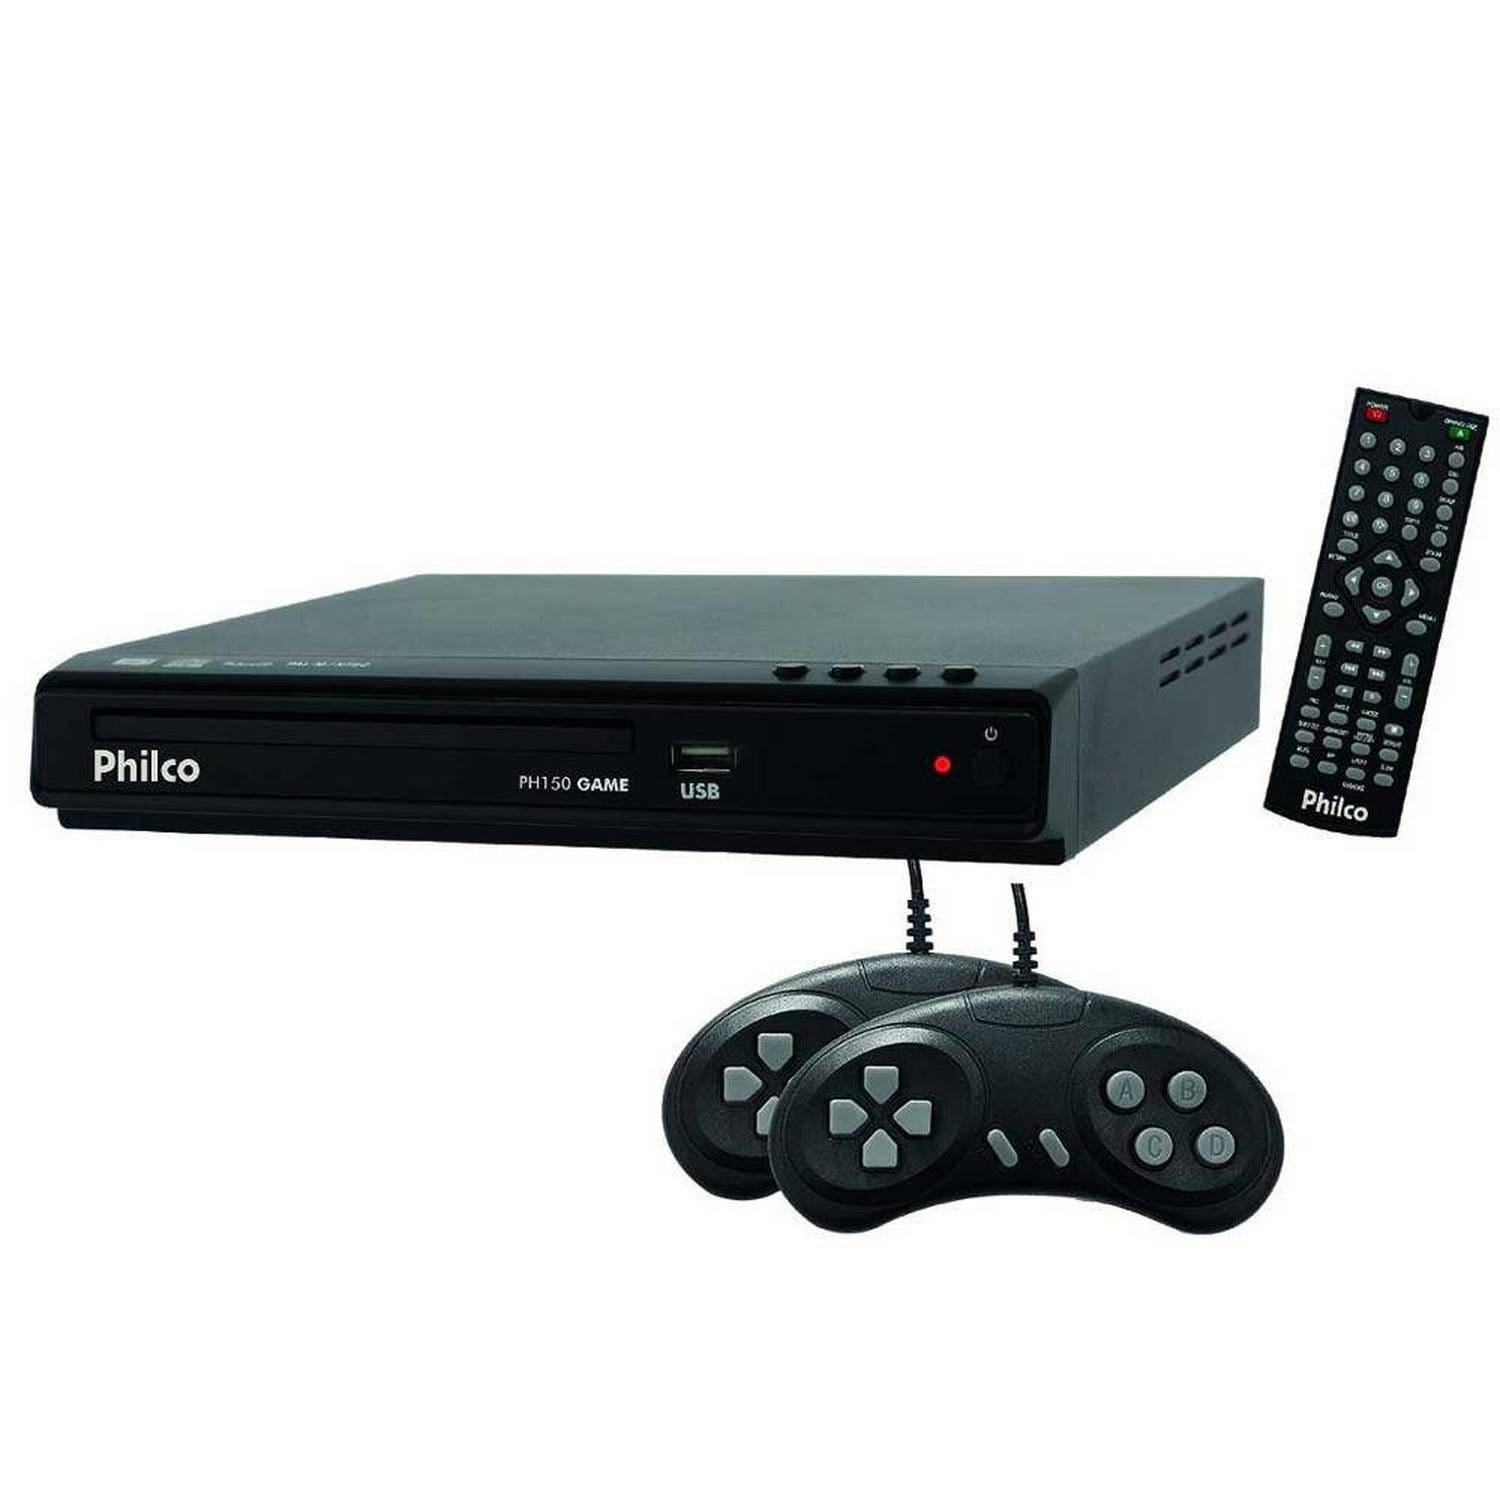 Sv Vcd Player Game com Entrada USB 2.0 Philco Ph150 - 5